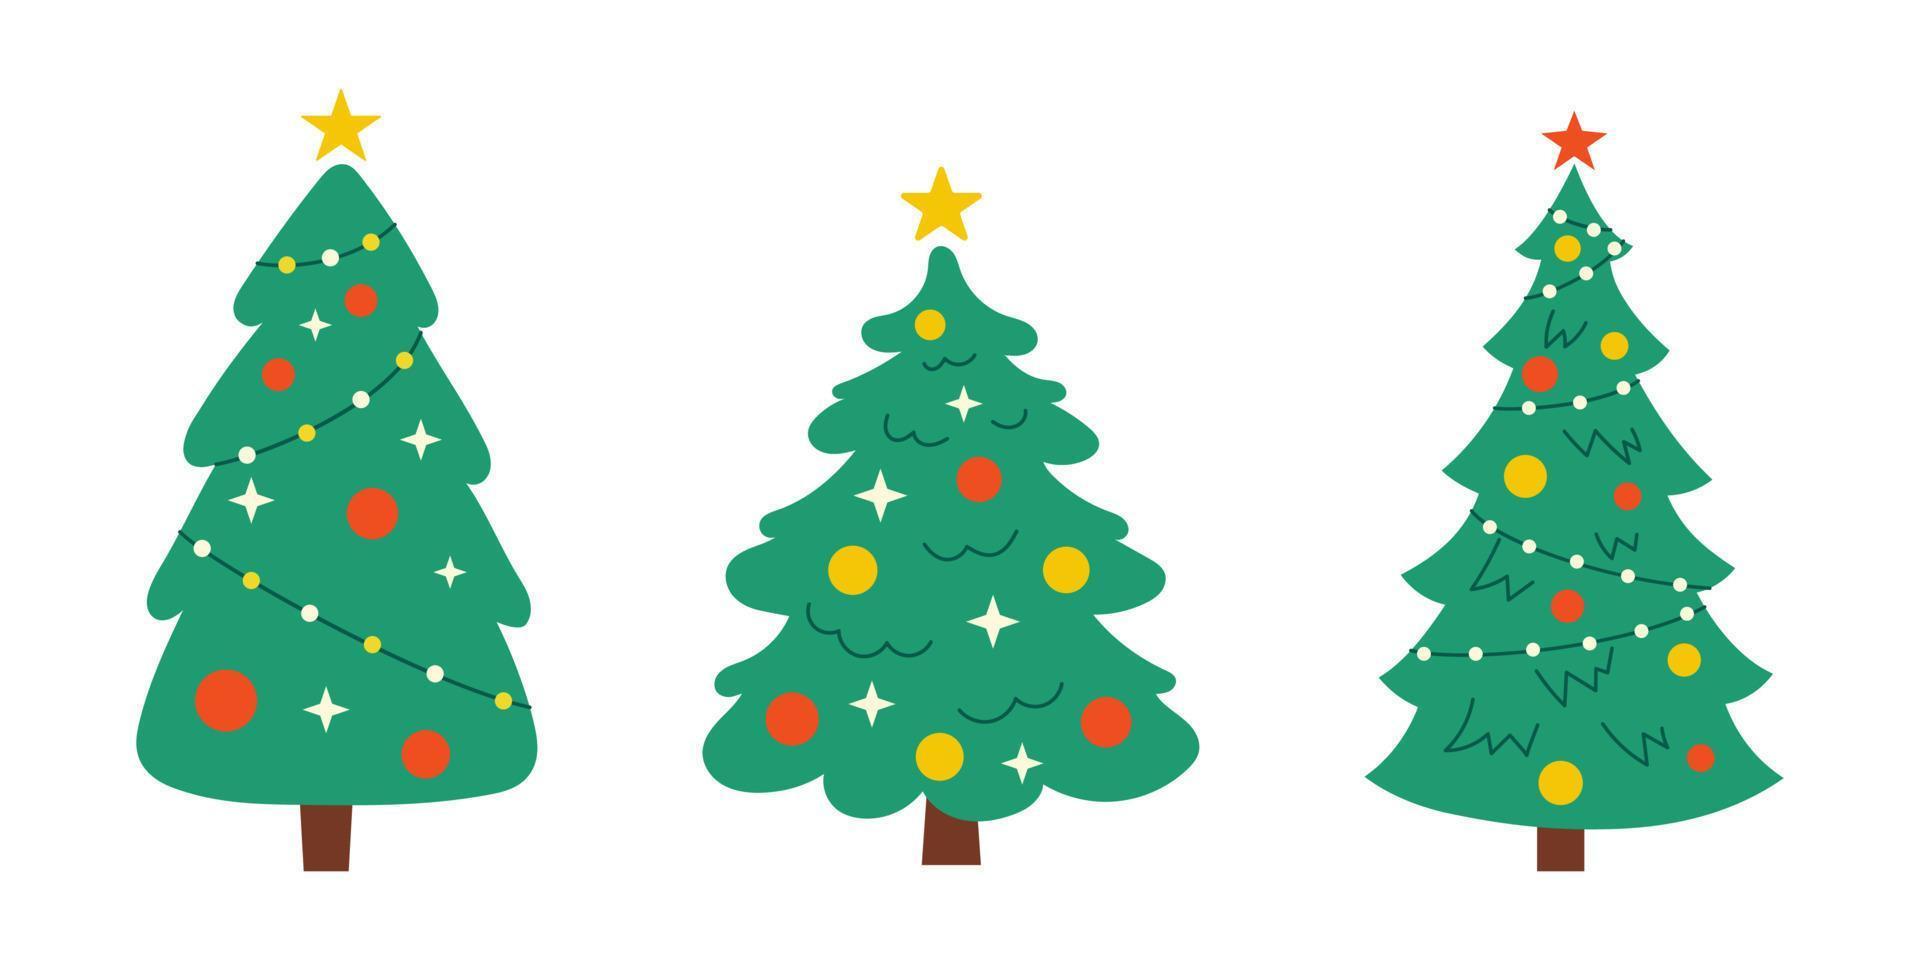 vektor ny år uppsättning med jul träd. söt vintergröna träd med bollar, stjärnor och girlanger. gran träd för jul.